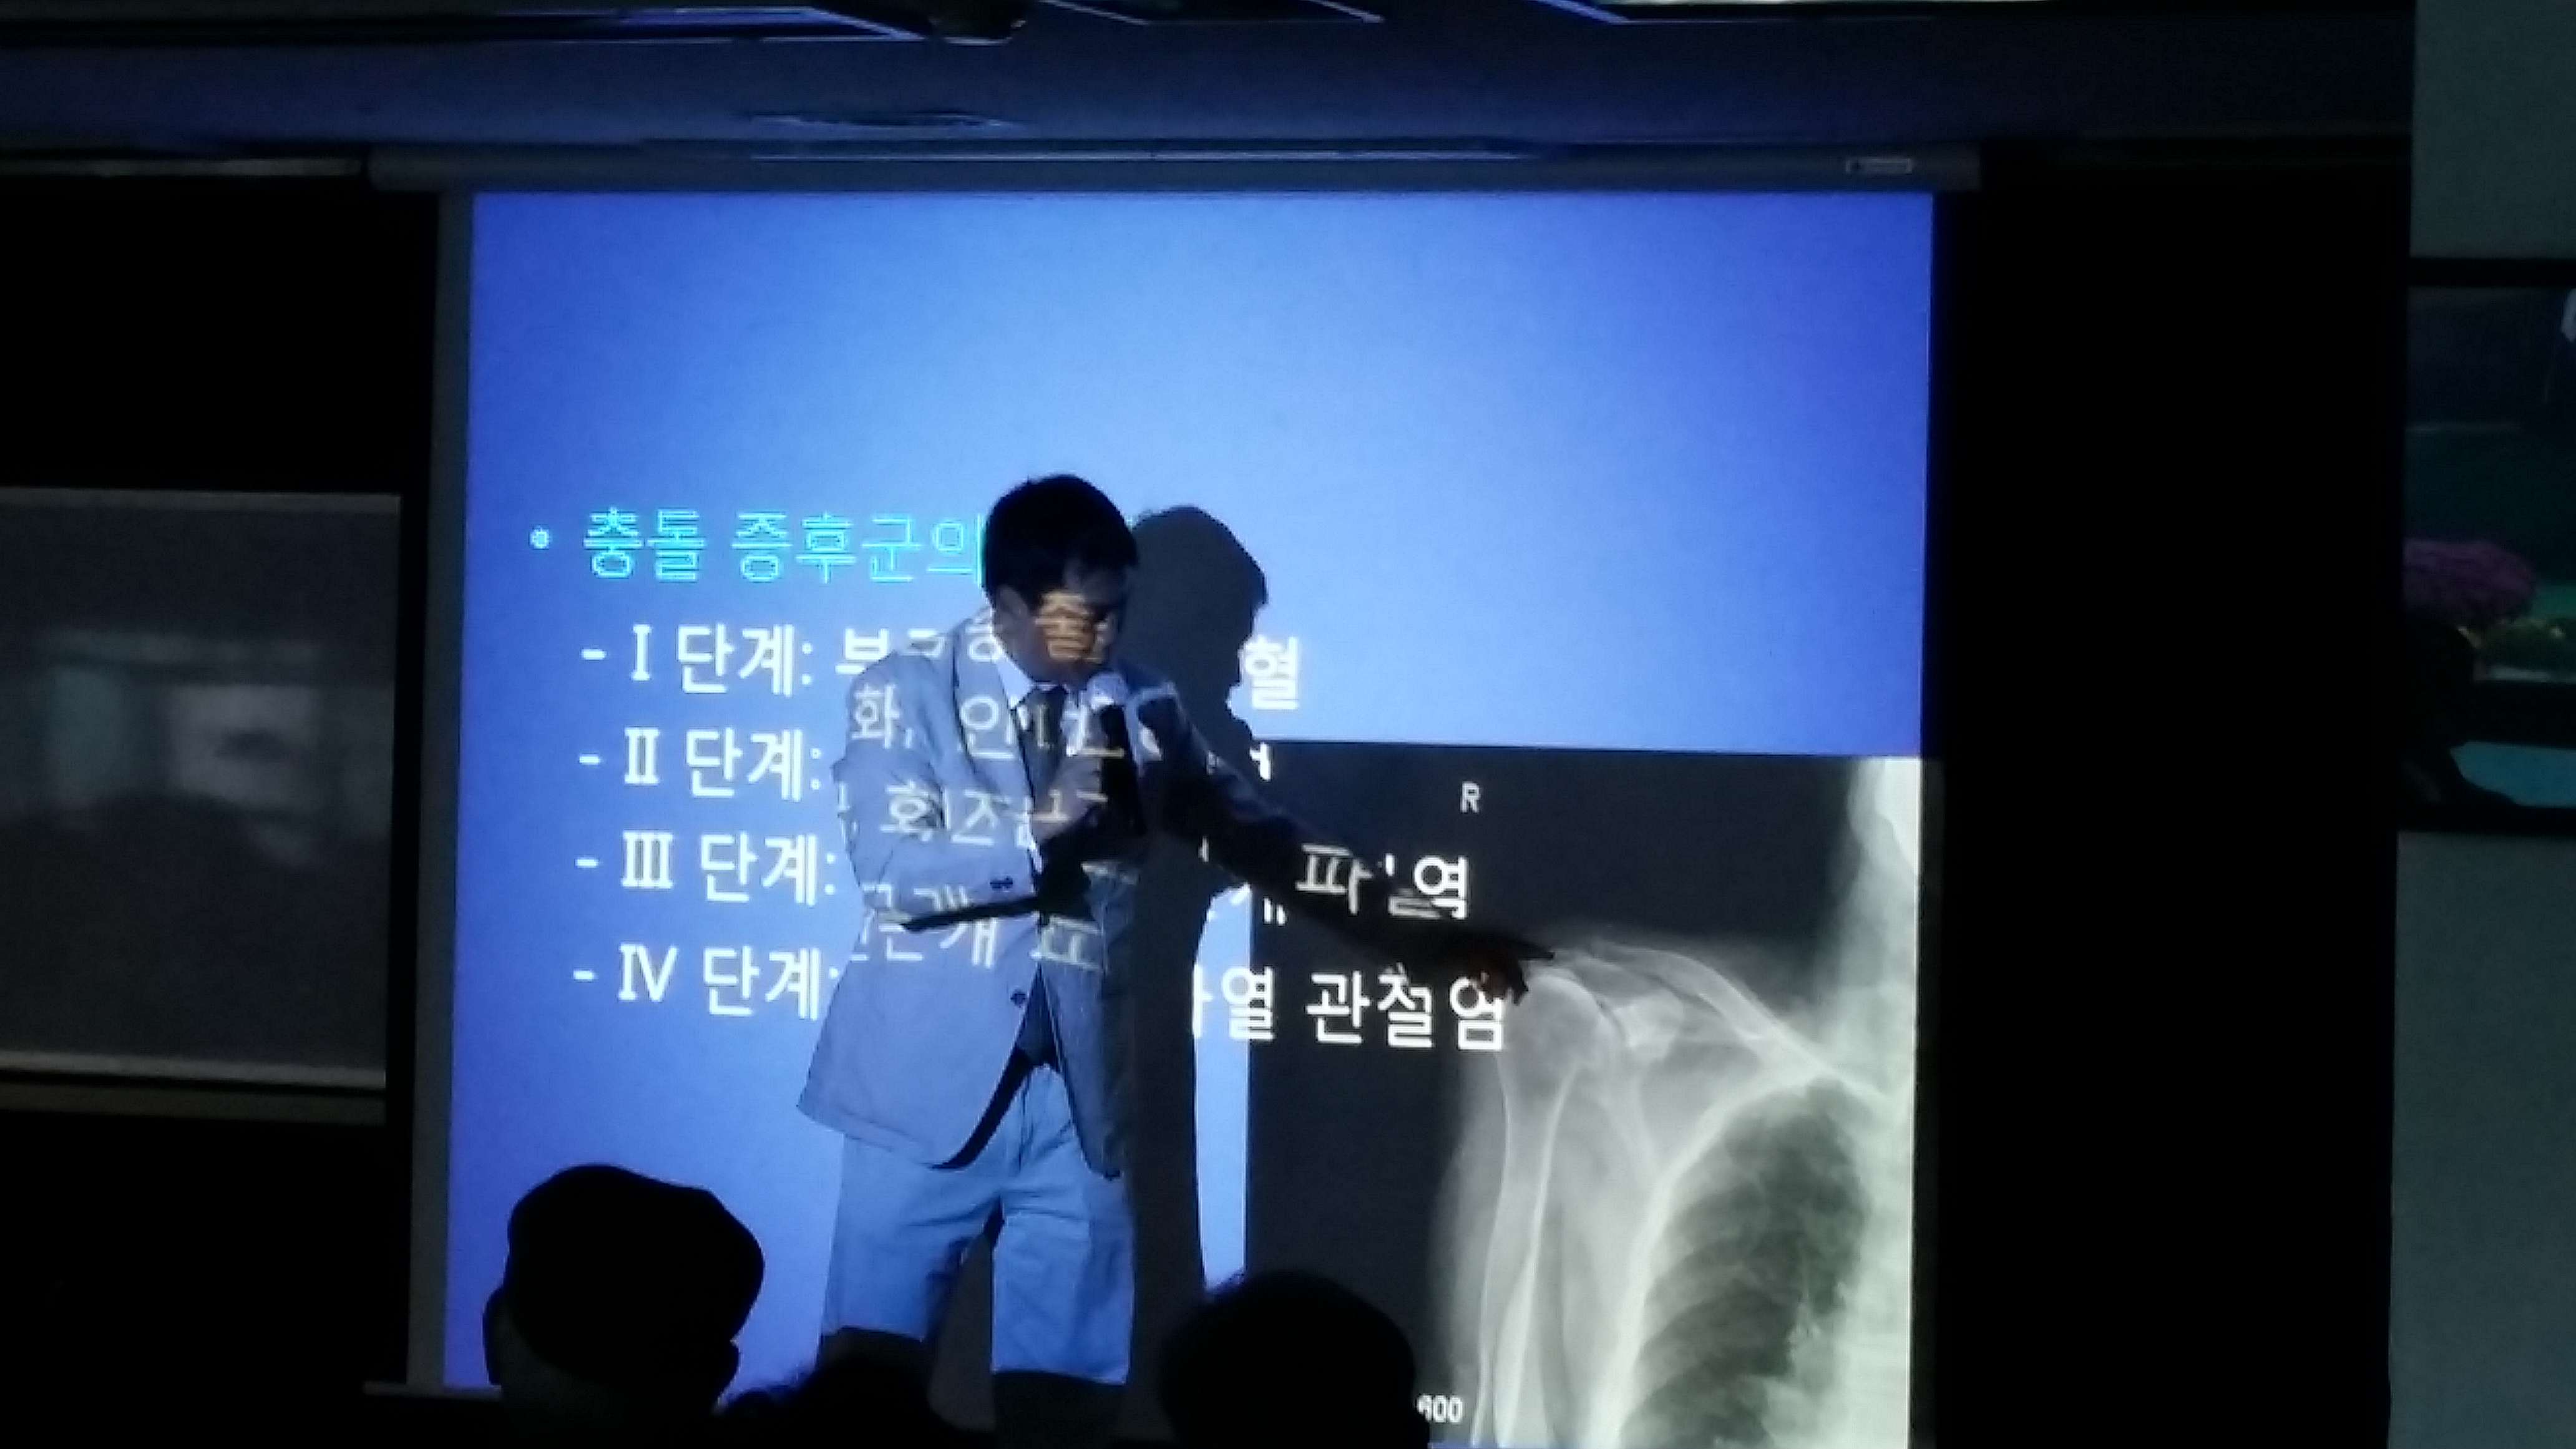 2013년 10월 16일 - 서울노인복지센터 건강강좌 게시글의 5번째 첨부파일입니다.